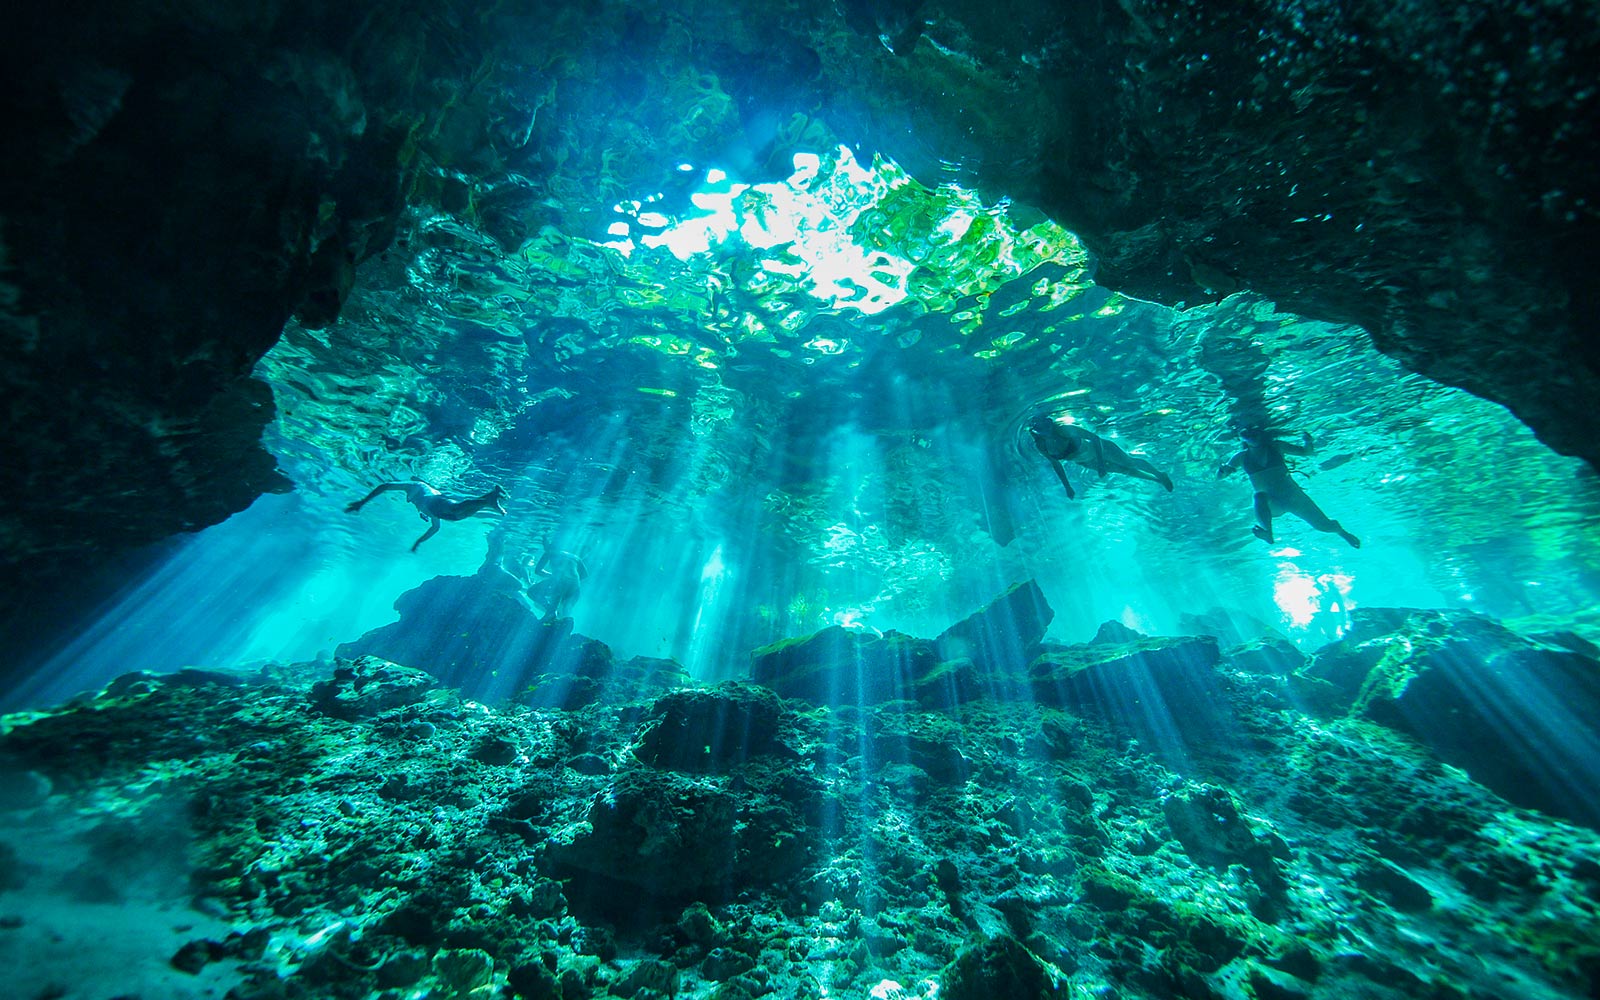 Podvodni prizor, osvetljen s svetlobnimi žarki, ki prodirajo v vodo (predvajaj video).